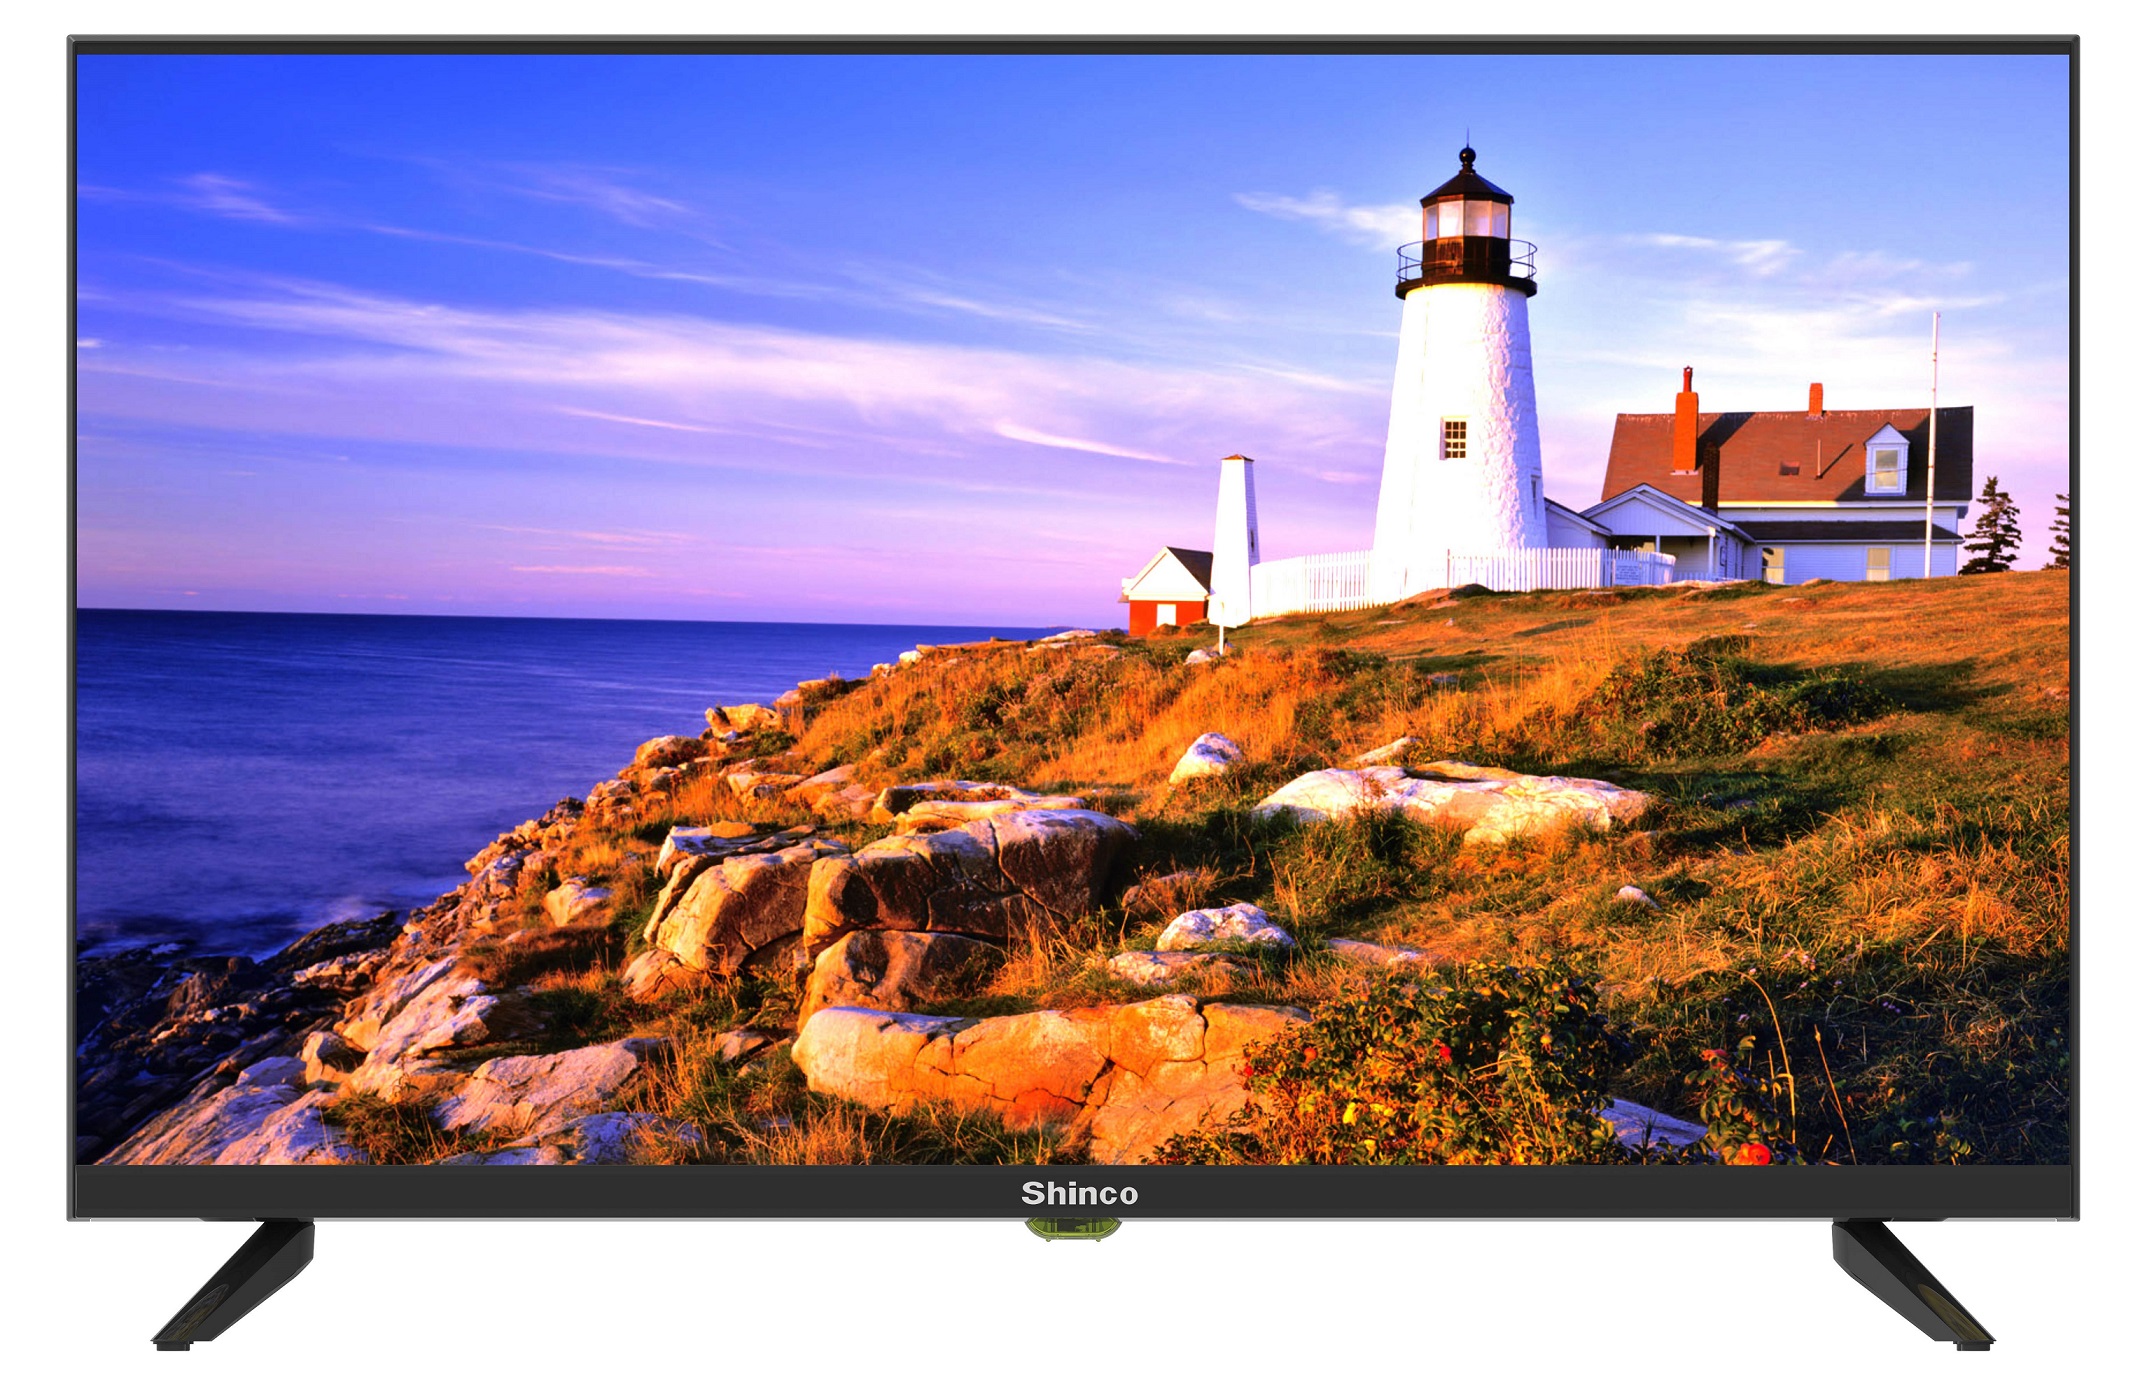 SDS9 NEW Frameless 32" High Definition LED TV Shinco